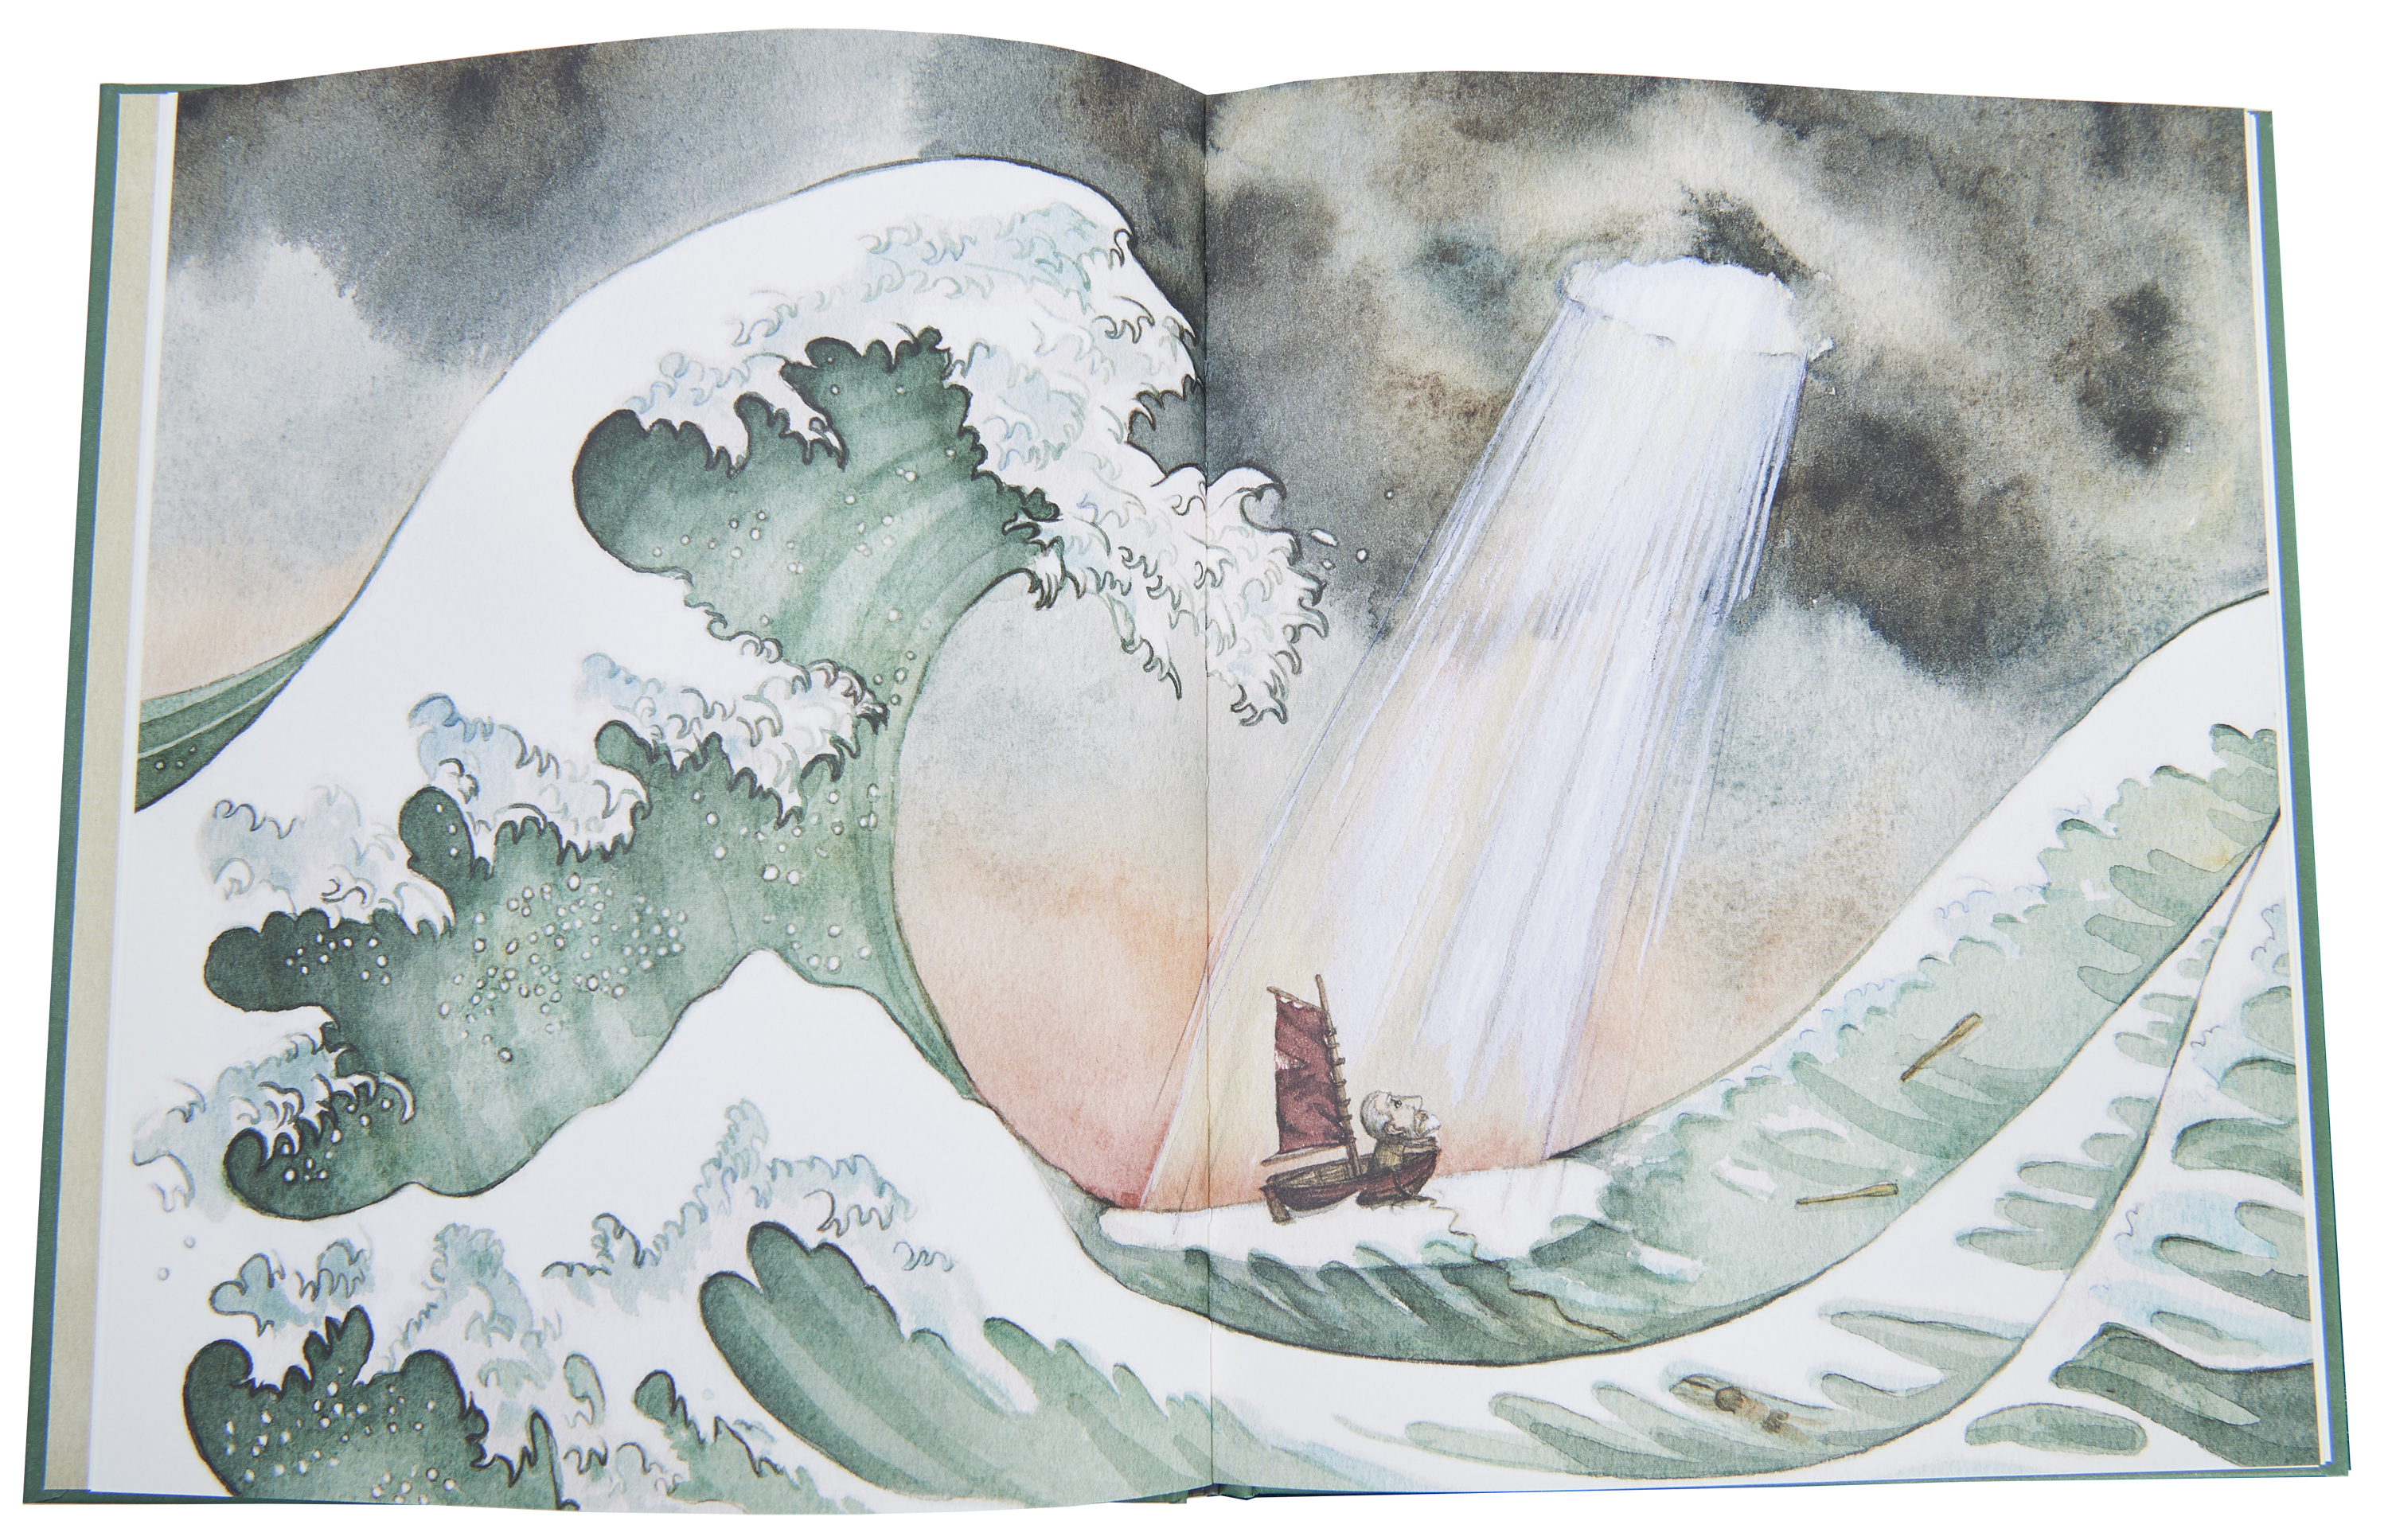 Opslag fra Noa, Illustrationer Kamilla Wichmann.